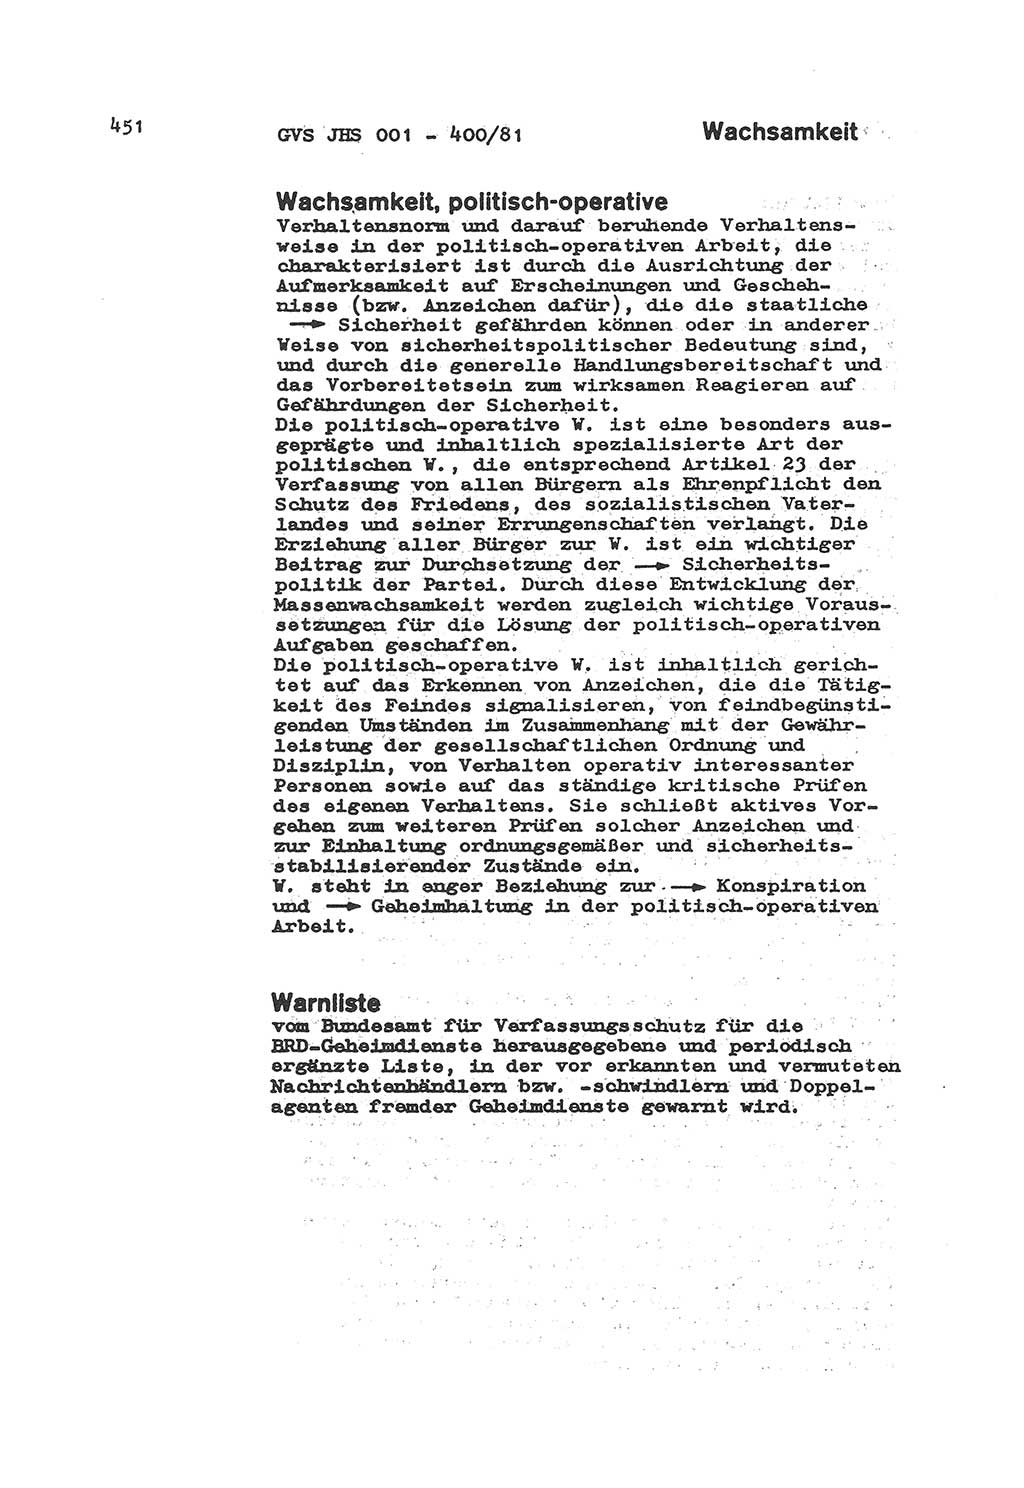 Wörterbuch der politisch-operativen Arbeit, Ministerium für Staatssicherheit (MfS) [Deutsche Demokratische Republik (DDR)], Juristische Hochschule (JHS), Geheime Verschlußsache (GVS) o001-400/81, Potsdam 1985, Blatt 451 (Wb. pol.-op. Arb. MfS DDR JHS GVS o001-400/81 1985, Bl. 451)